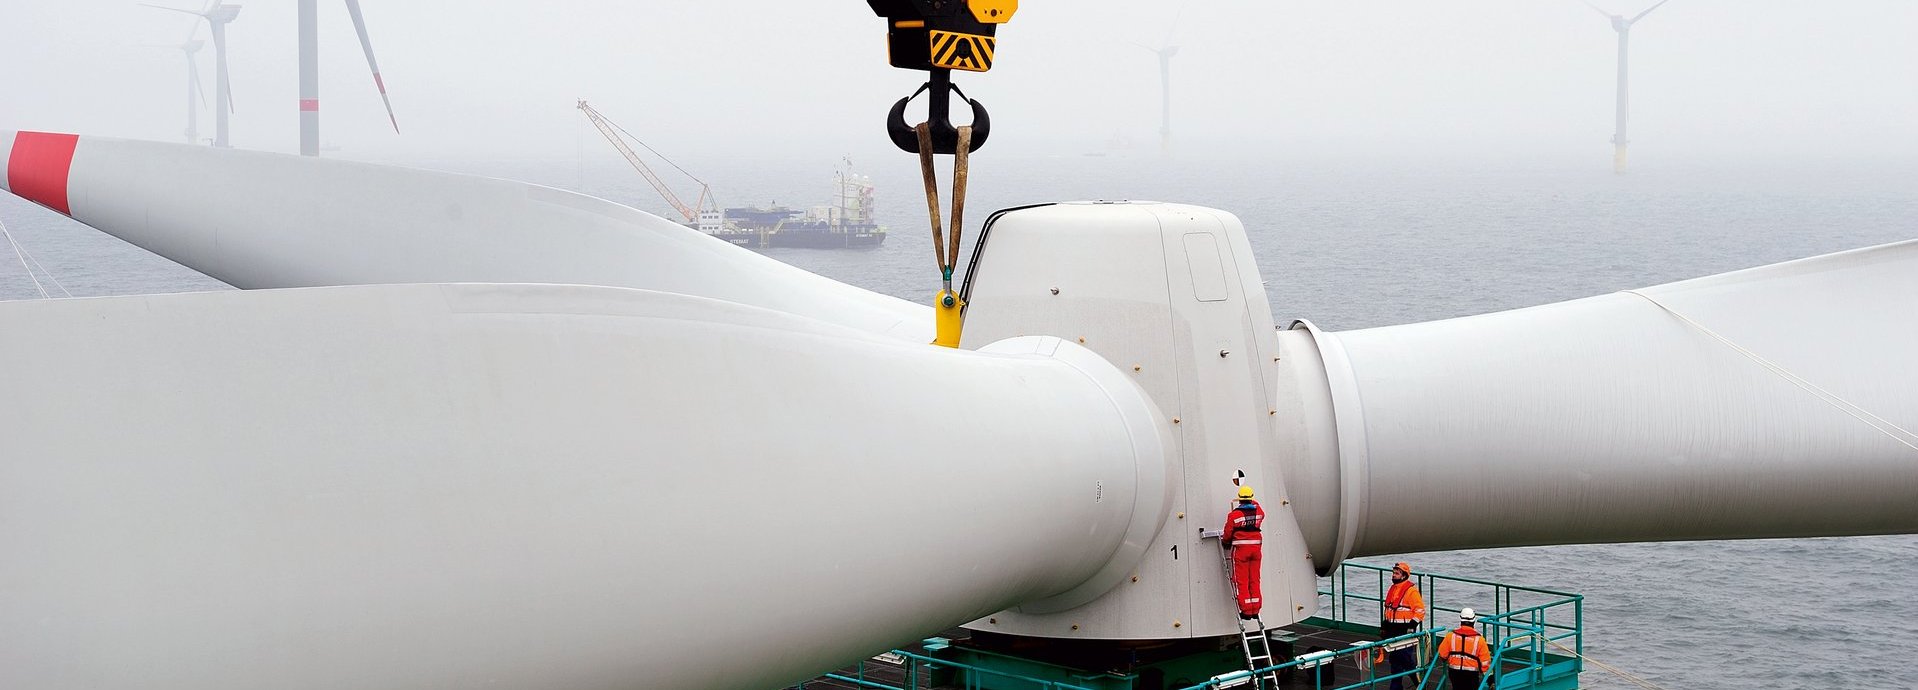 Turbine wird auf Offshore Windrad gebaut mit Kran und Arbeitern